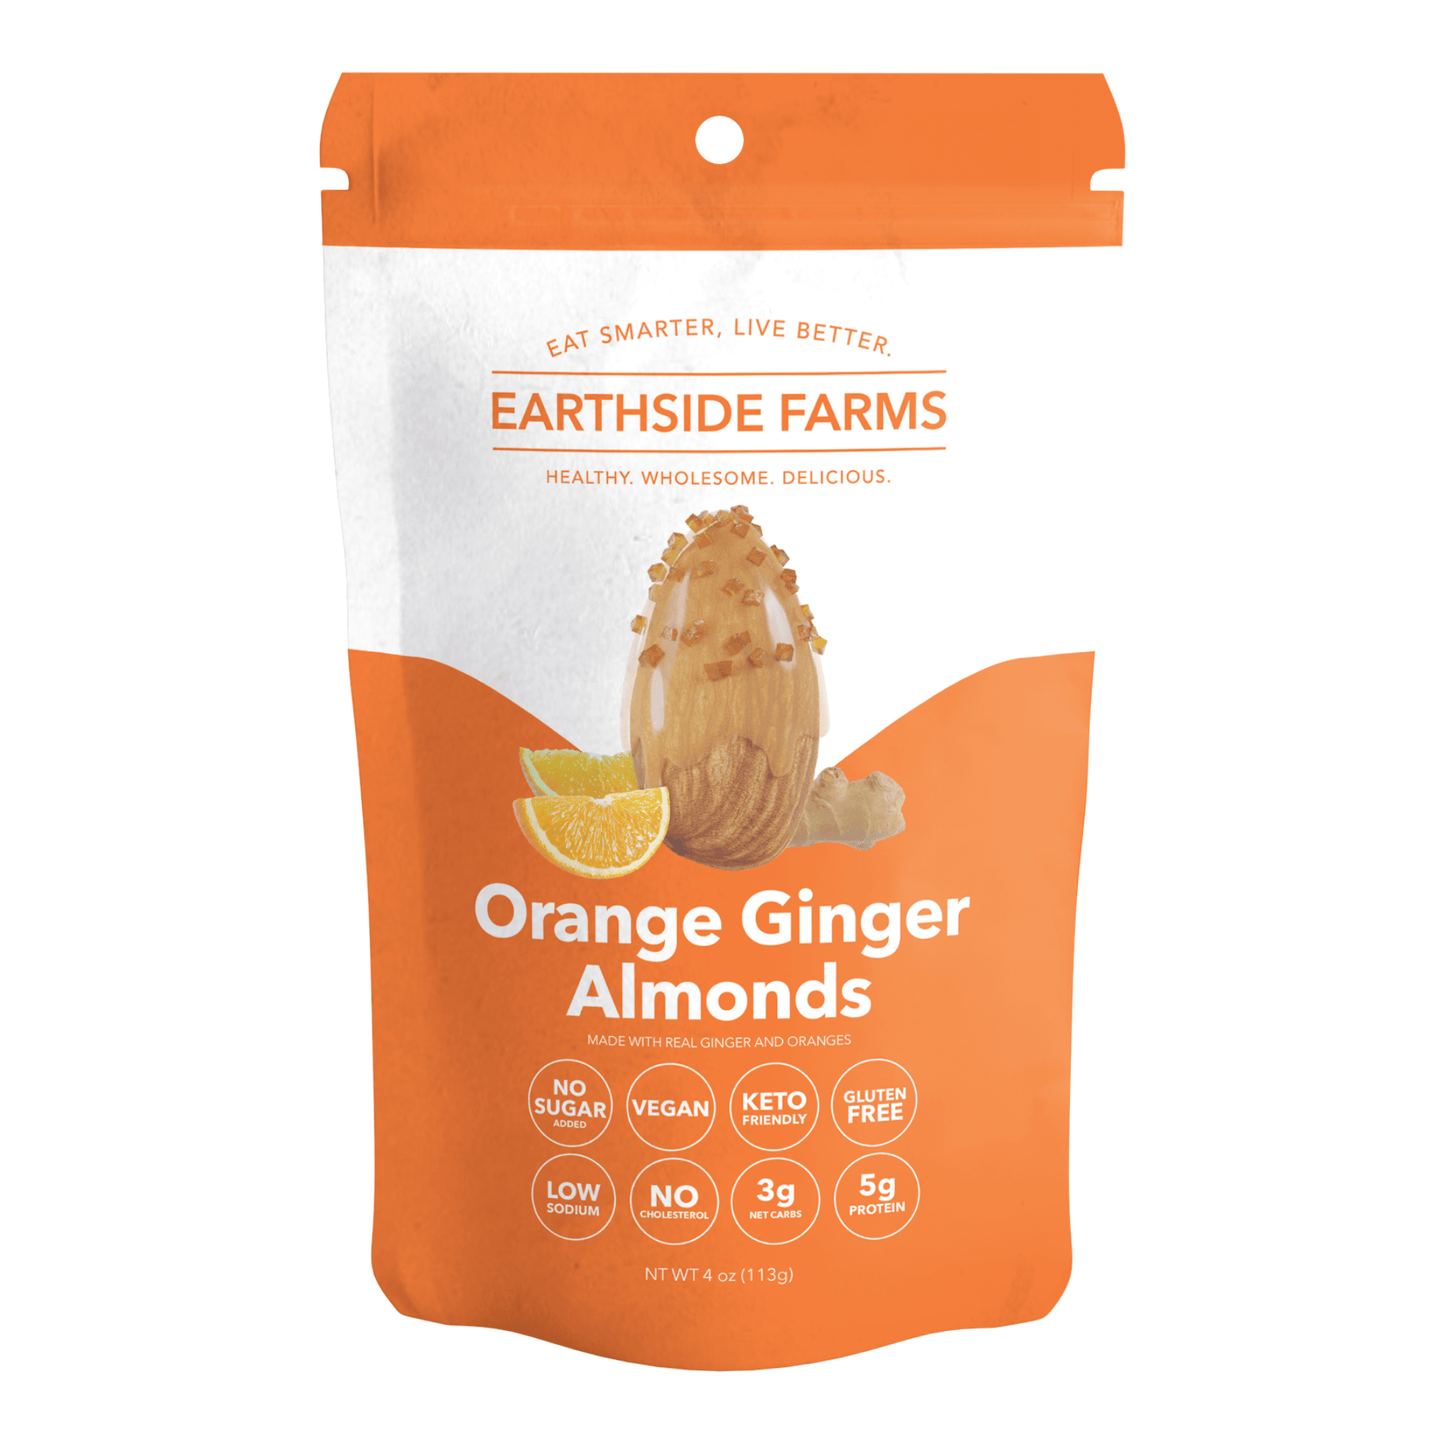 Orange Ginger Almonds - Earthside Farms